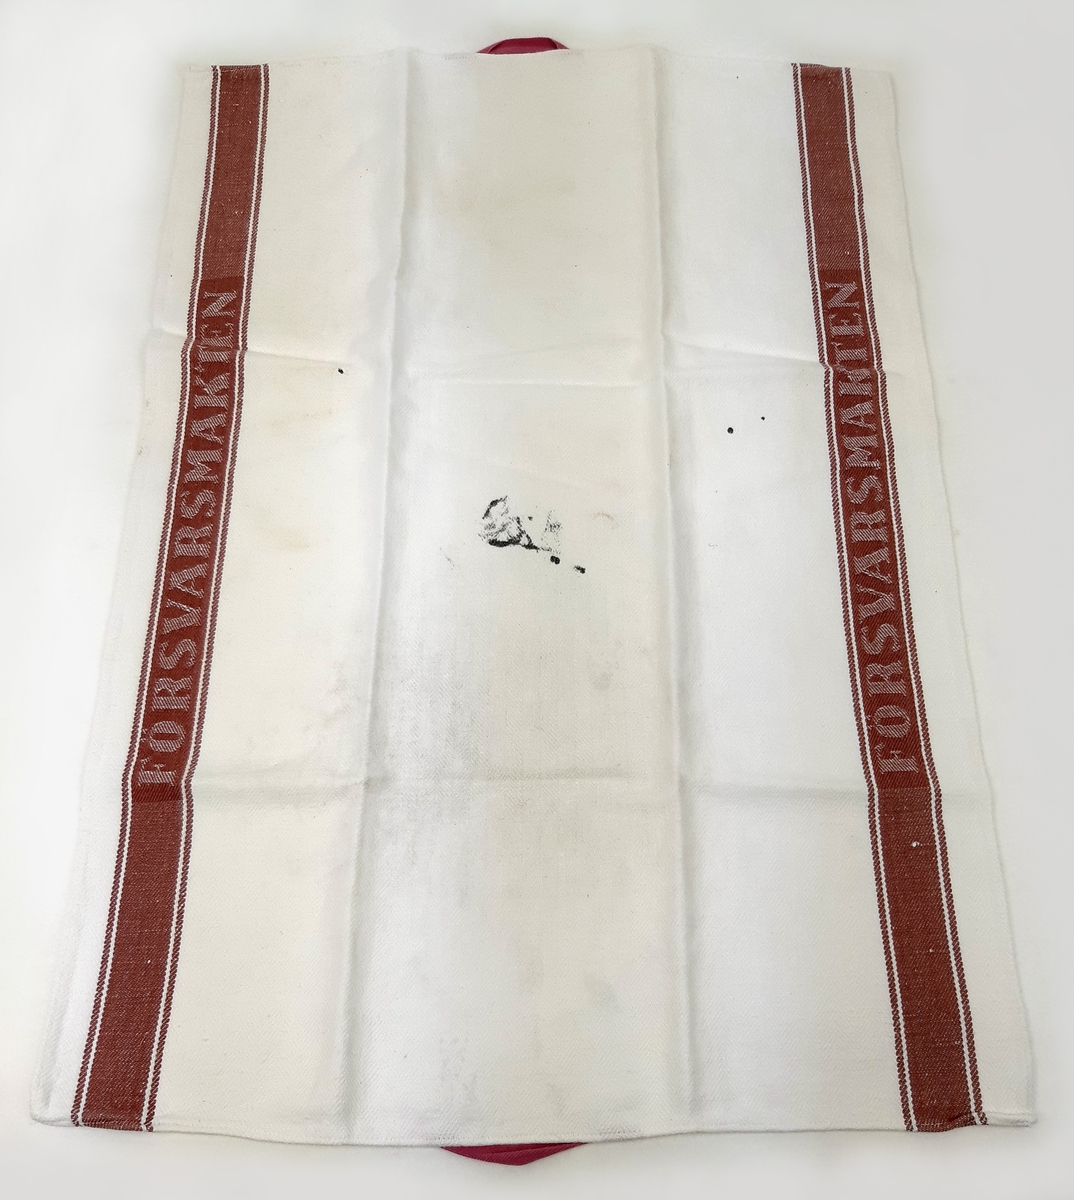 Linnehandduk i vit textil med bruna bårder, samt invävd text "FÖRSVARSMAKTEN".